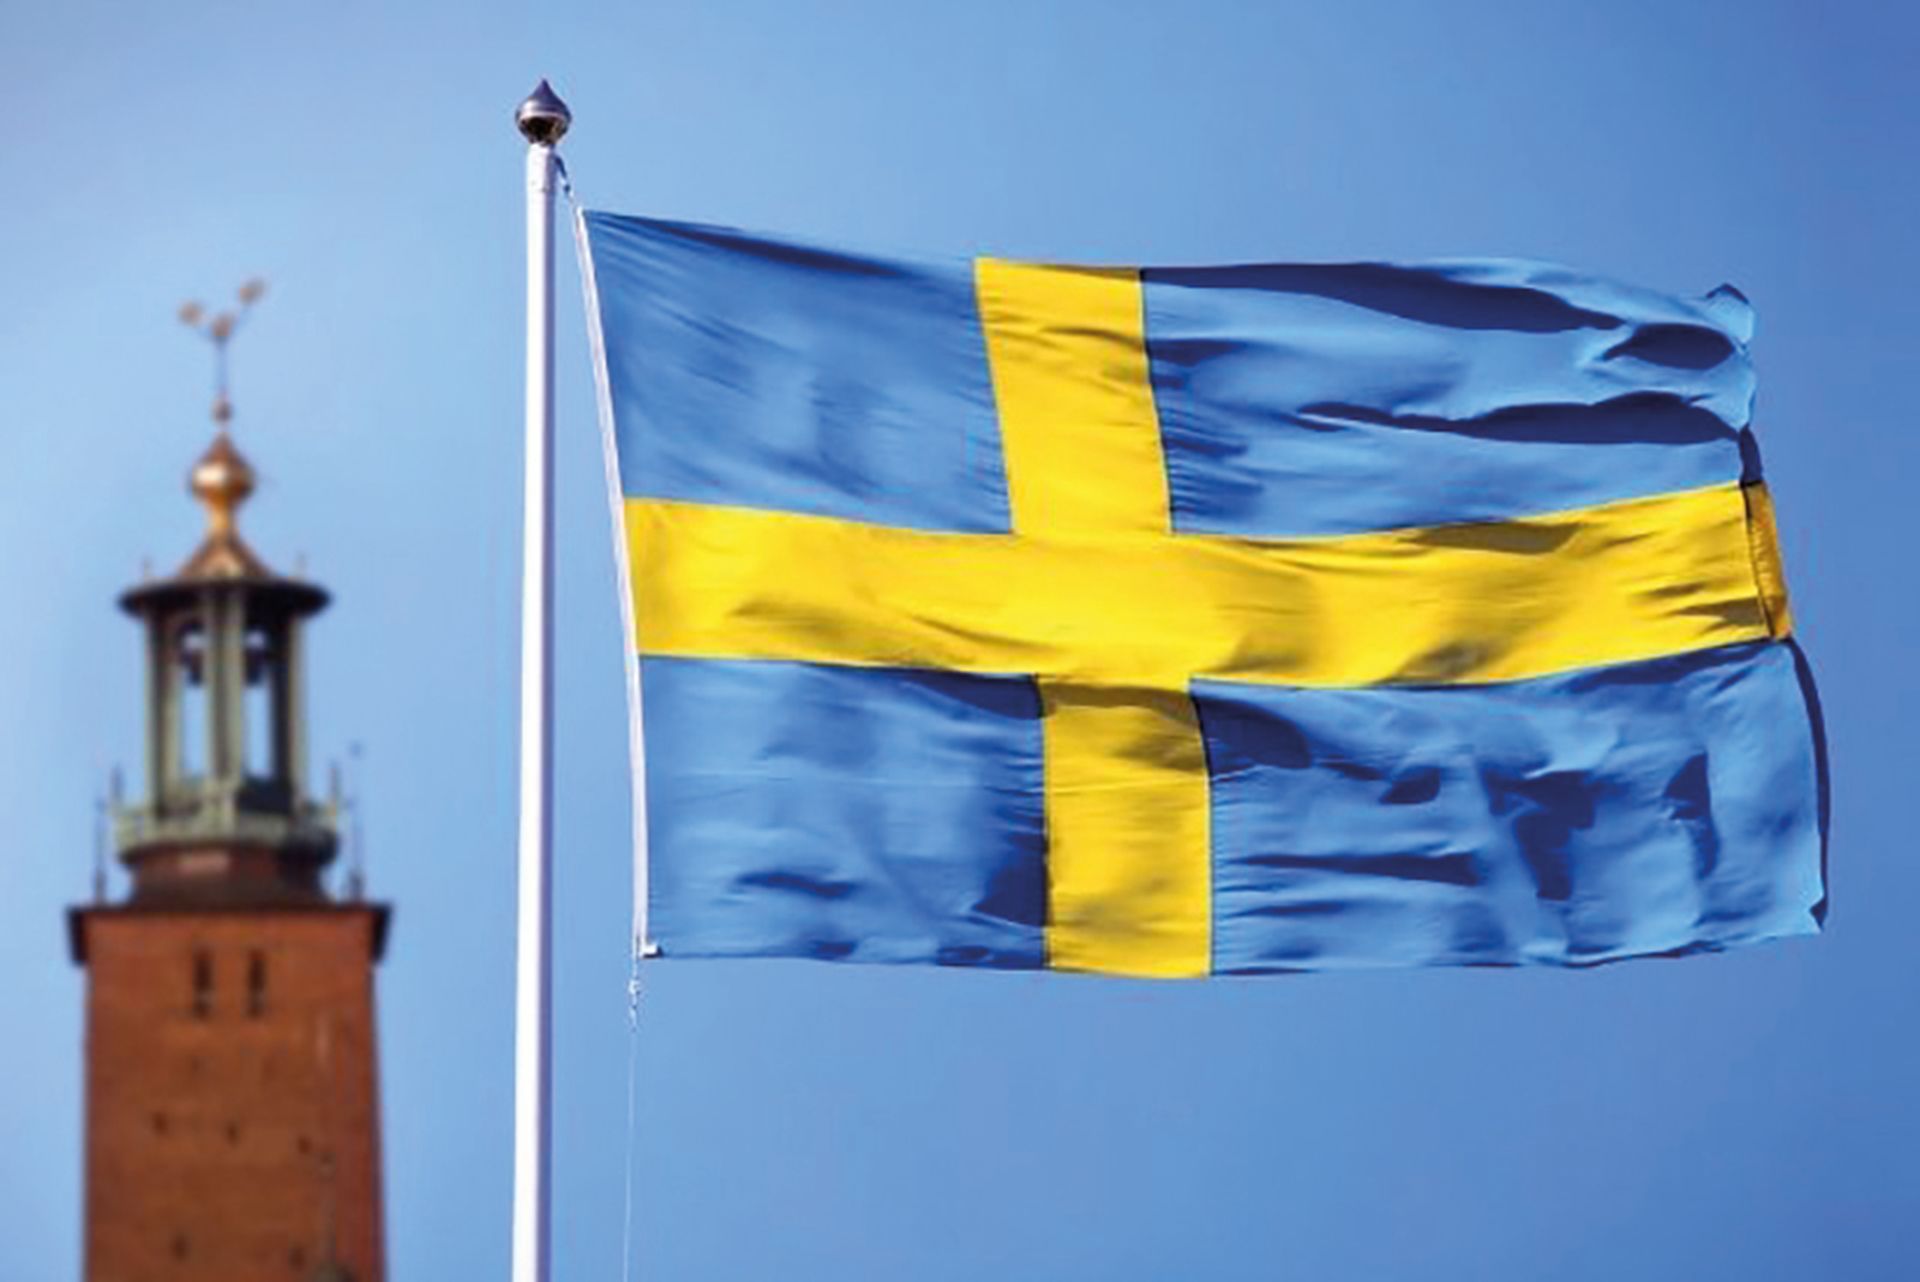 İsveç’i Avrupa girişim ekosisteminde lider yapan nedir?